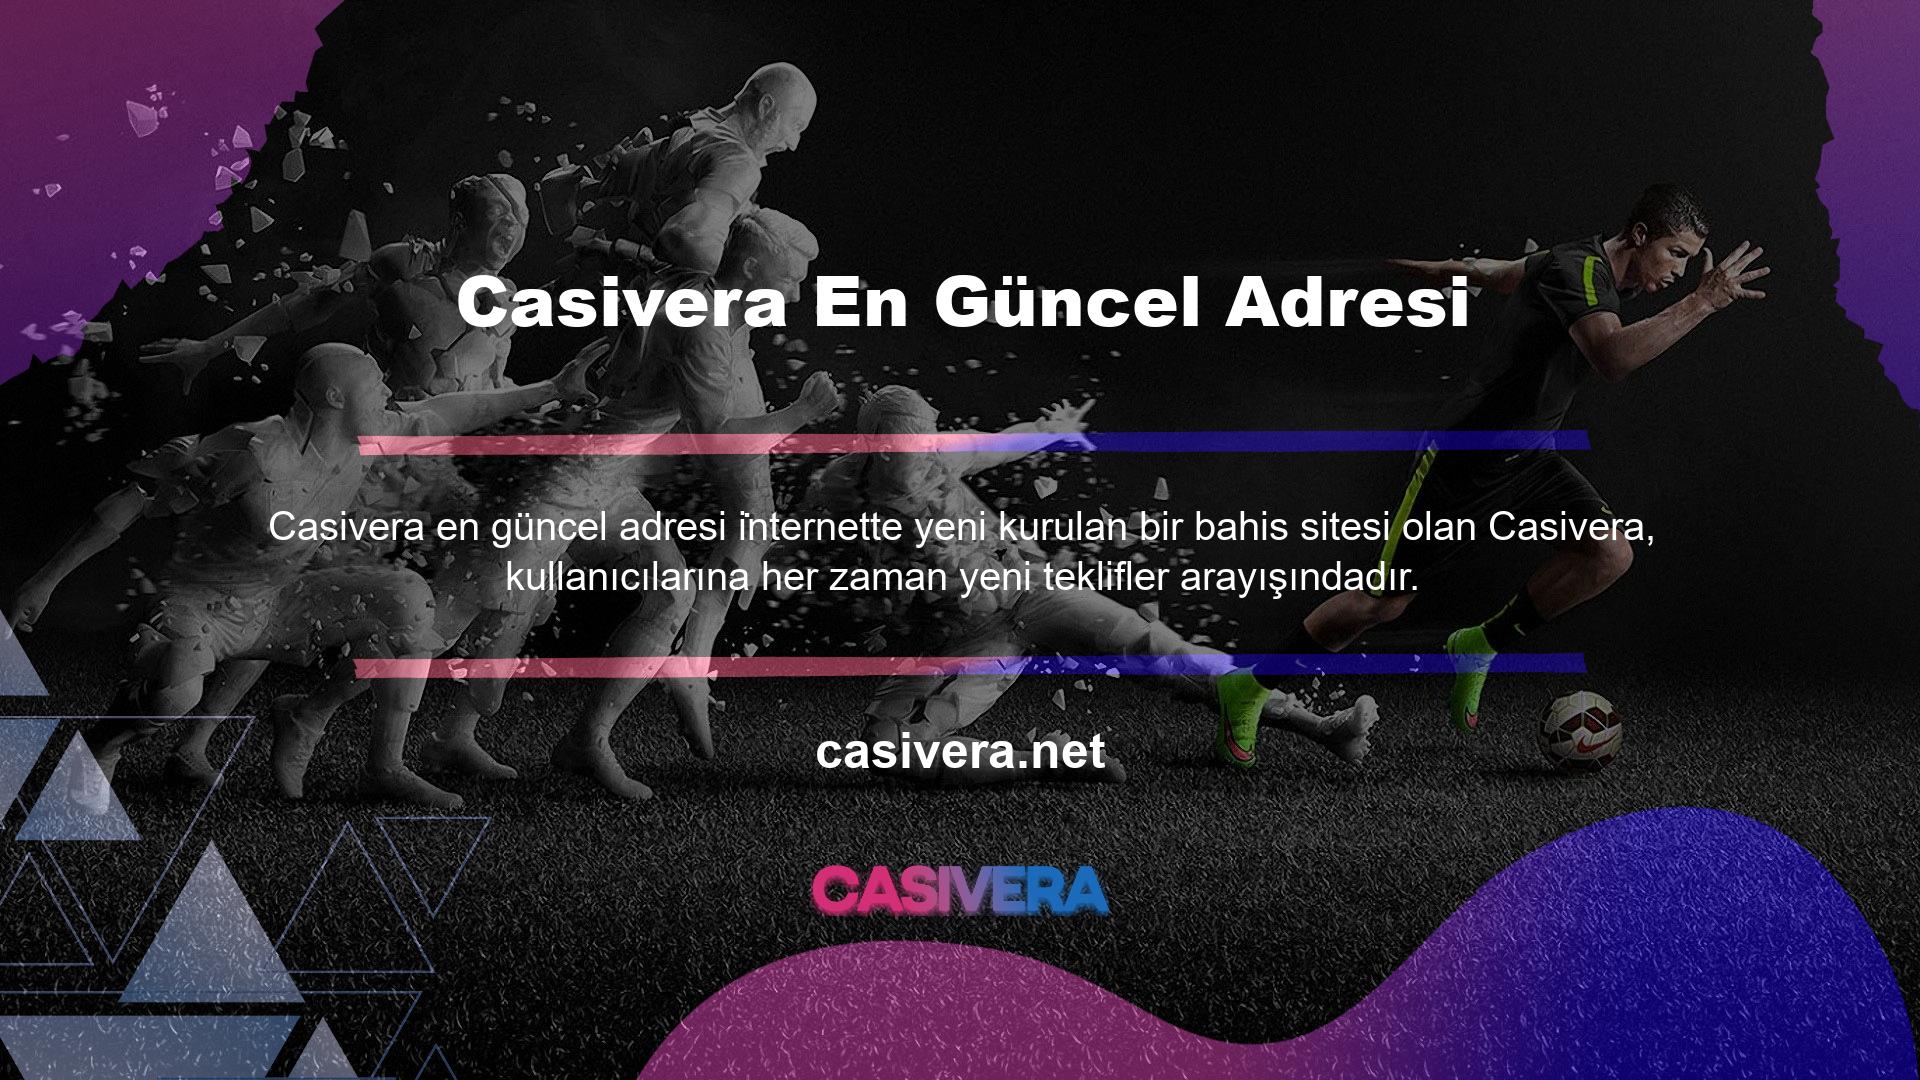 Casivera, dinamik yapısı ve yenilikçi içeriğiyle sürekli olarak yeniliğin itici gücünü kullanıcılarına ortaya koyuyor ve onlara en son teknolojiye sahip casino ve casino hizmetleri sunuyor